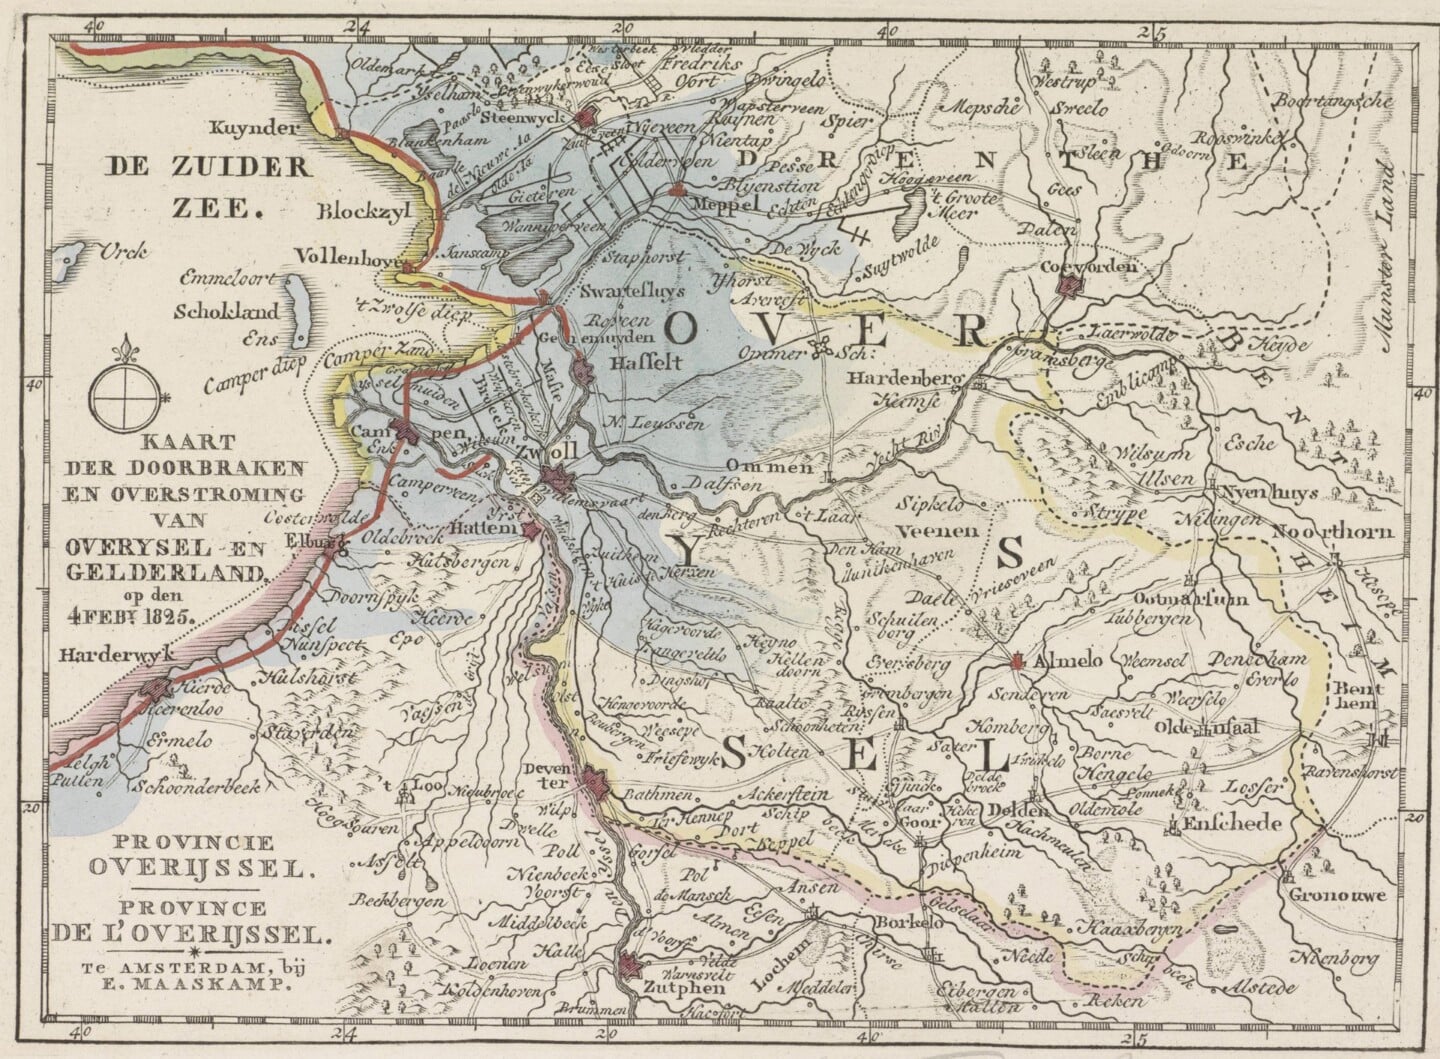 Kaart van de gebieden in Overijssel en Gelderland getroffen door de overstromingen in 1825